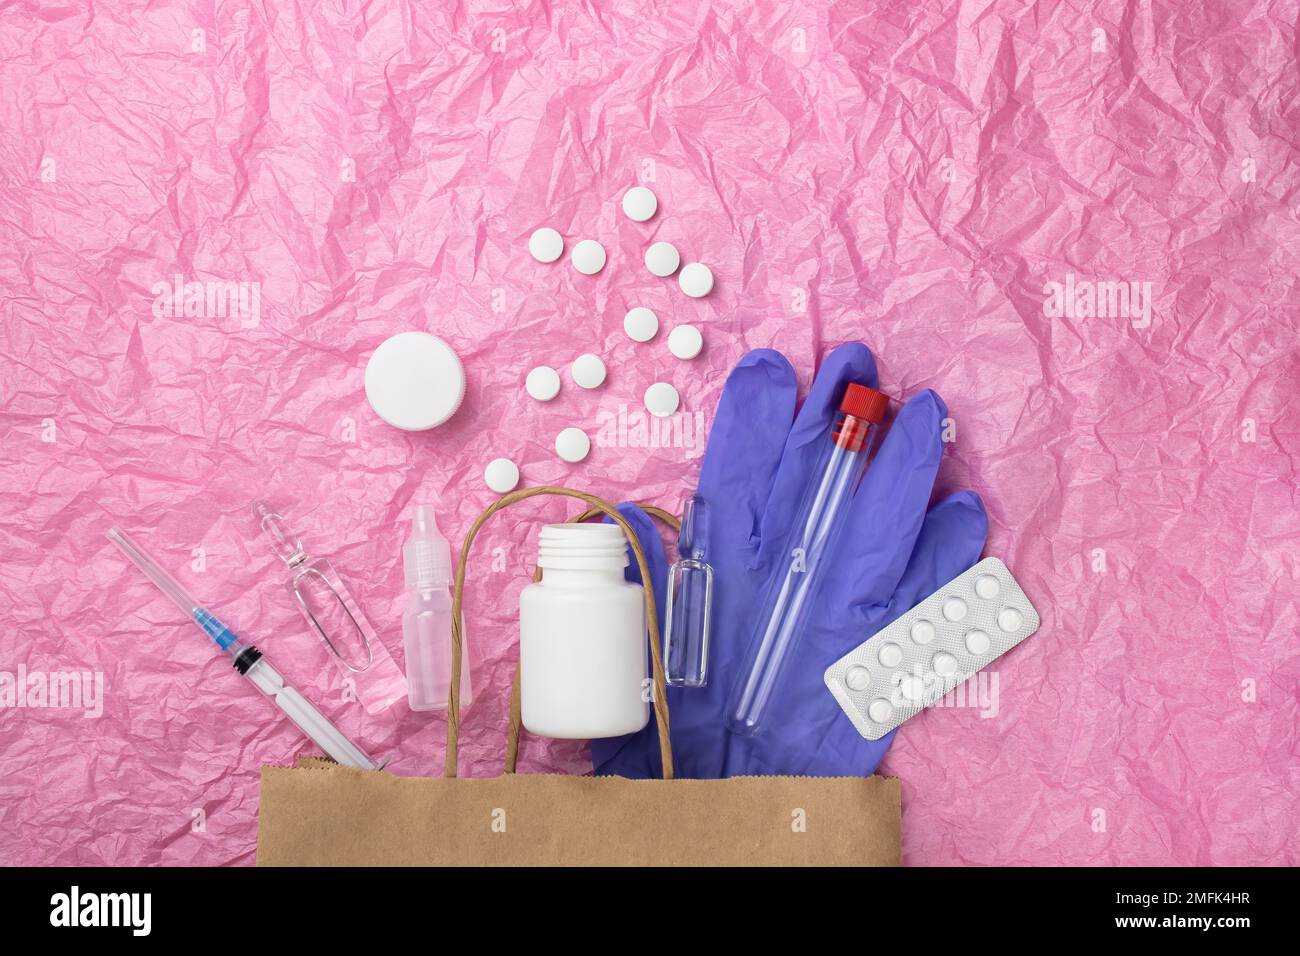 Articoli medici come le fiale della pillola, una siringa e i guanti sbirciano fuori da un sacchetto di carta contro uno sfondo di carta rosa stropicciata. Un sacco di spazio vuoto fo Foto Stock